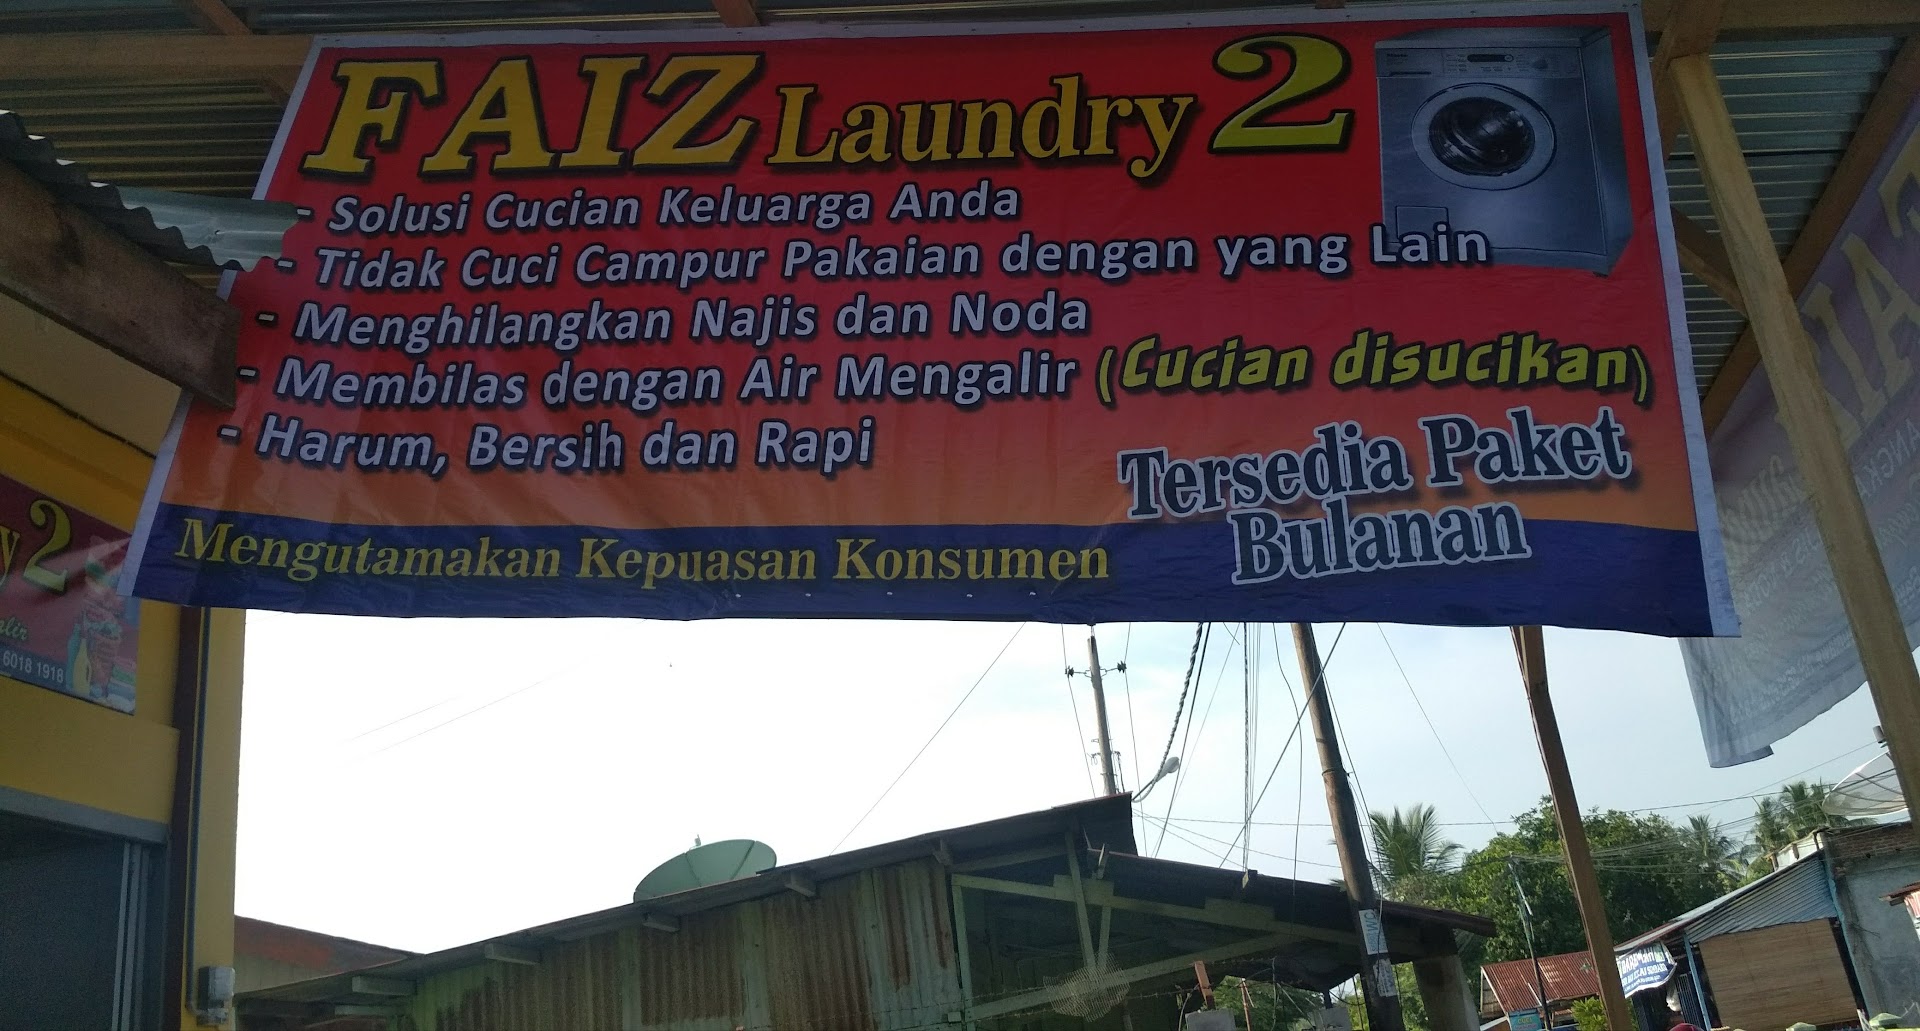 Faiz Laundry 2 Photo